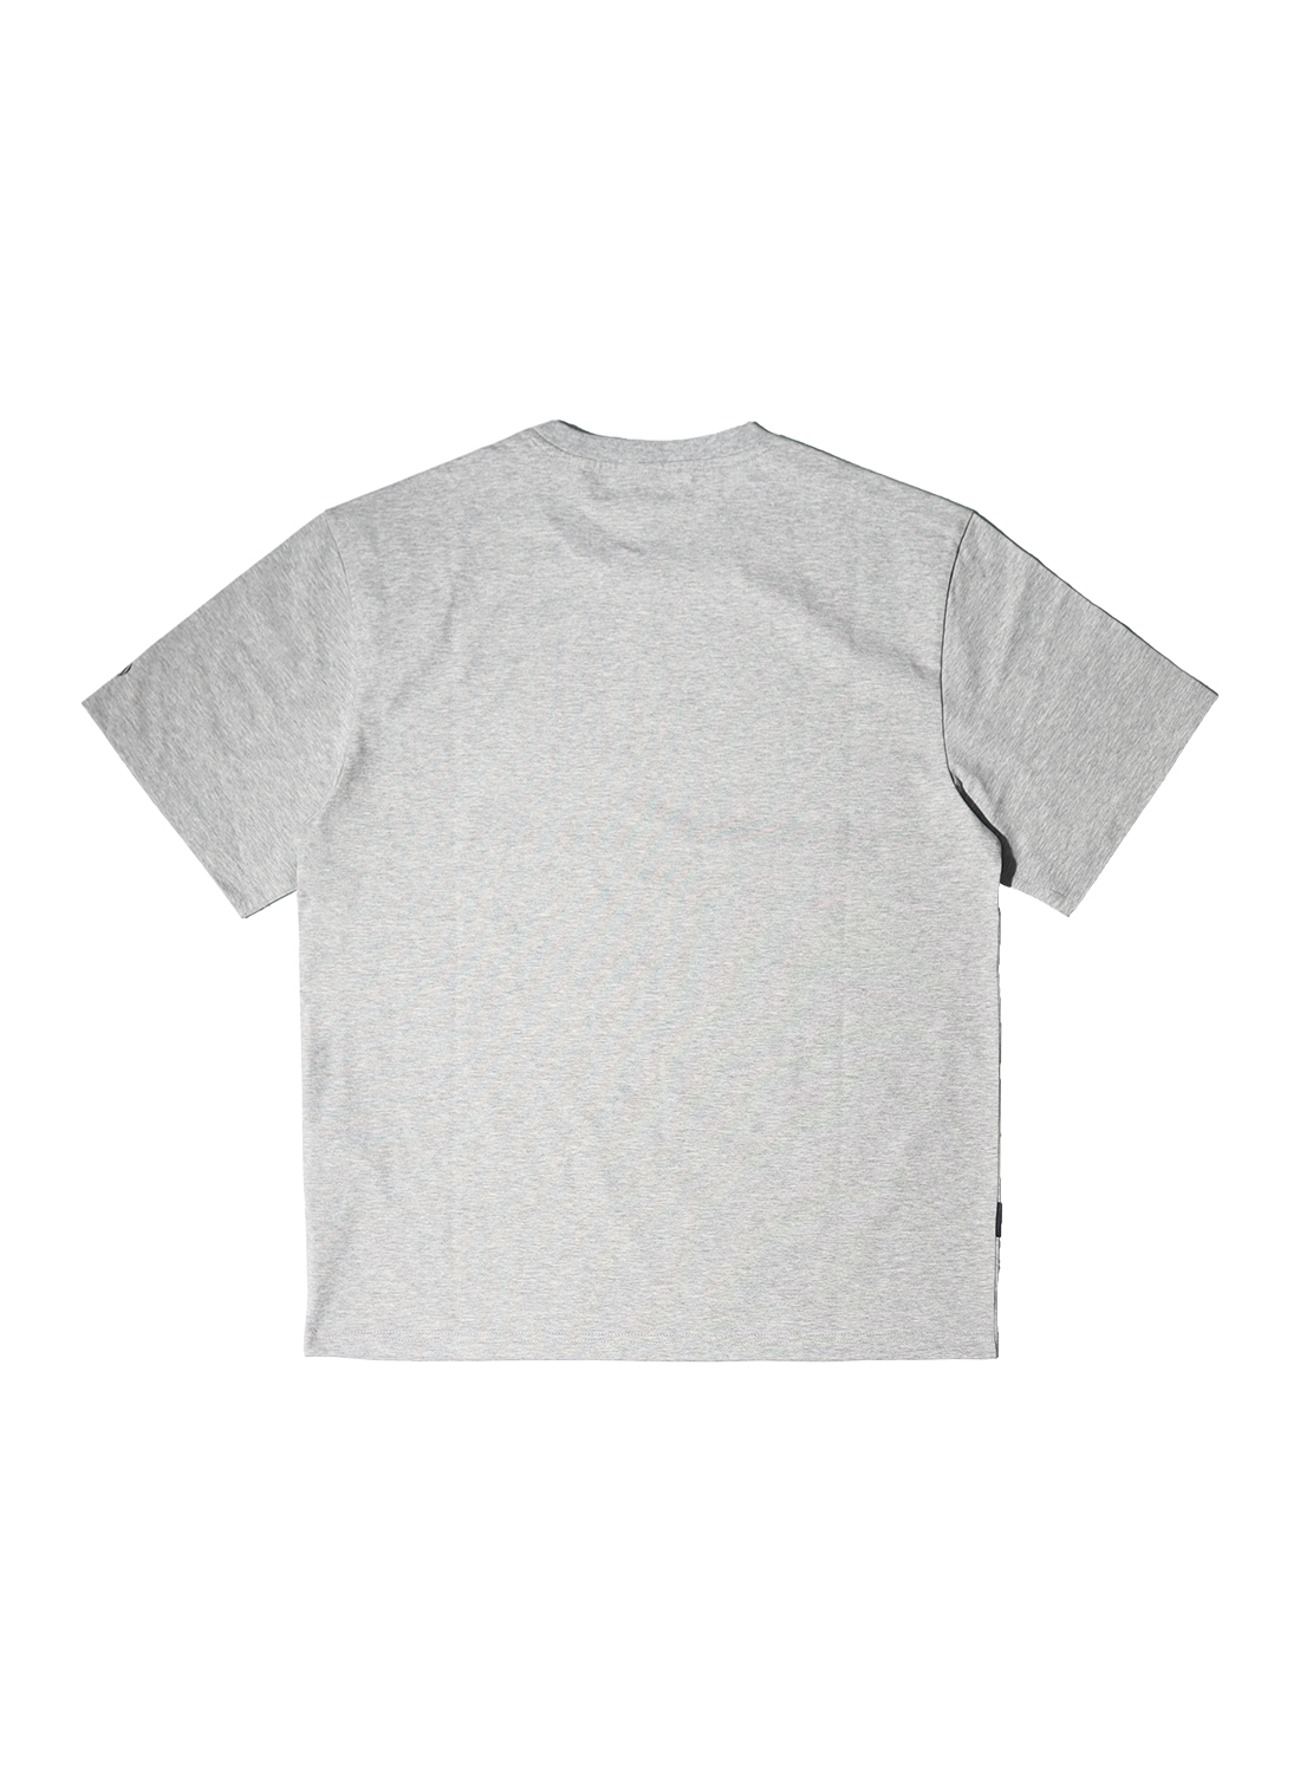 OHC 크루 그래픽 티셔츠-멜란지그레이